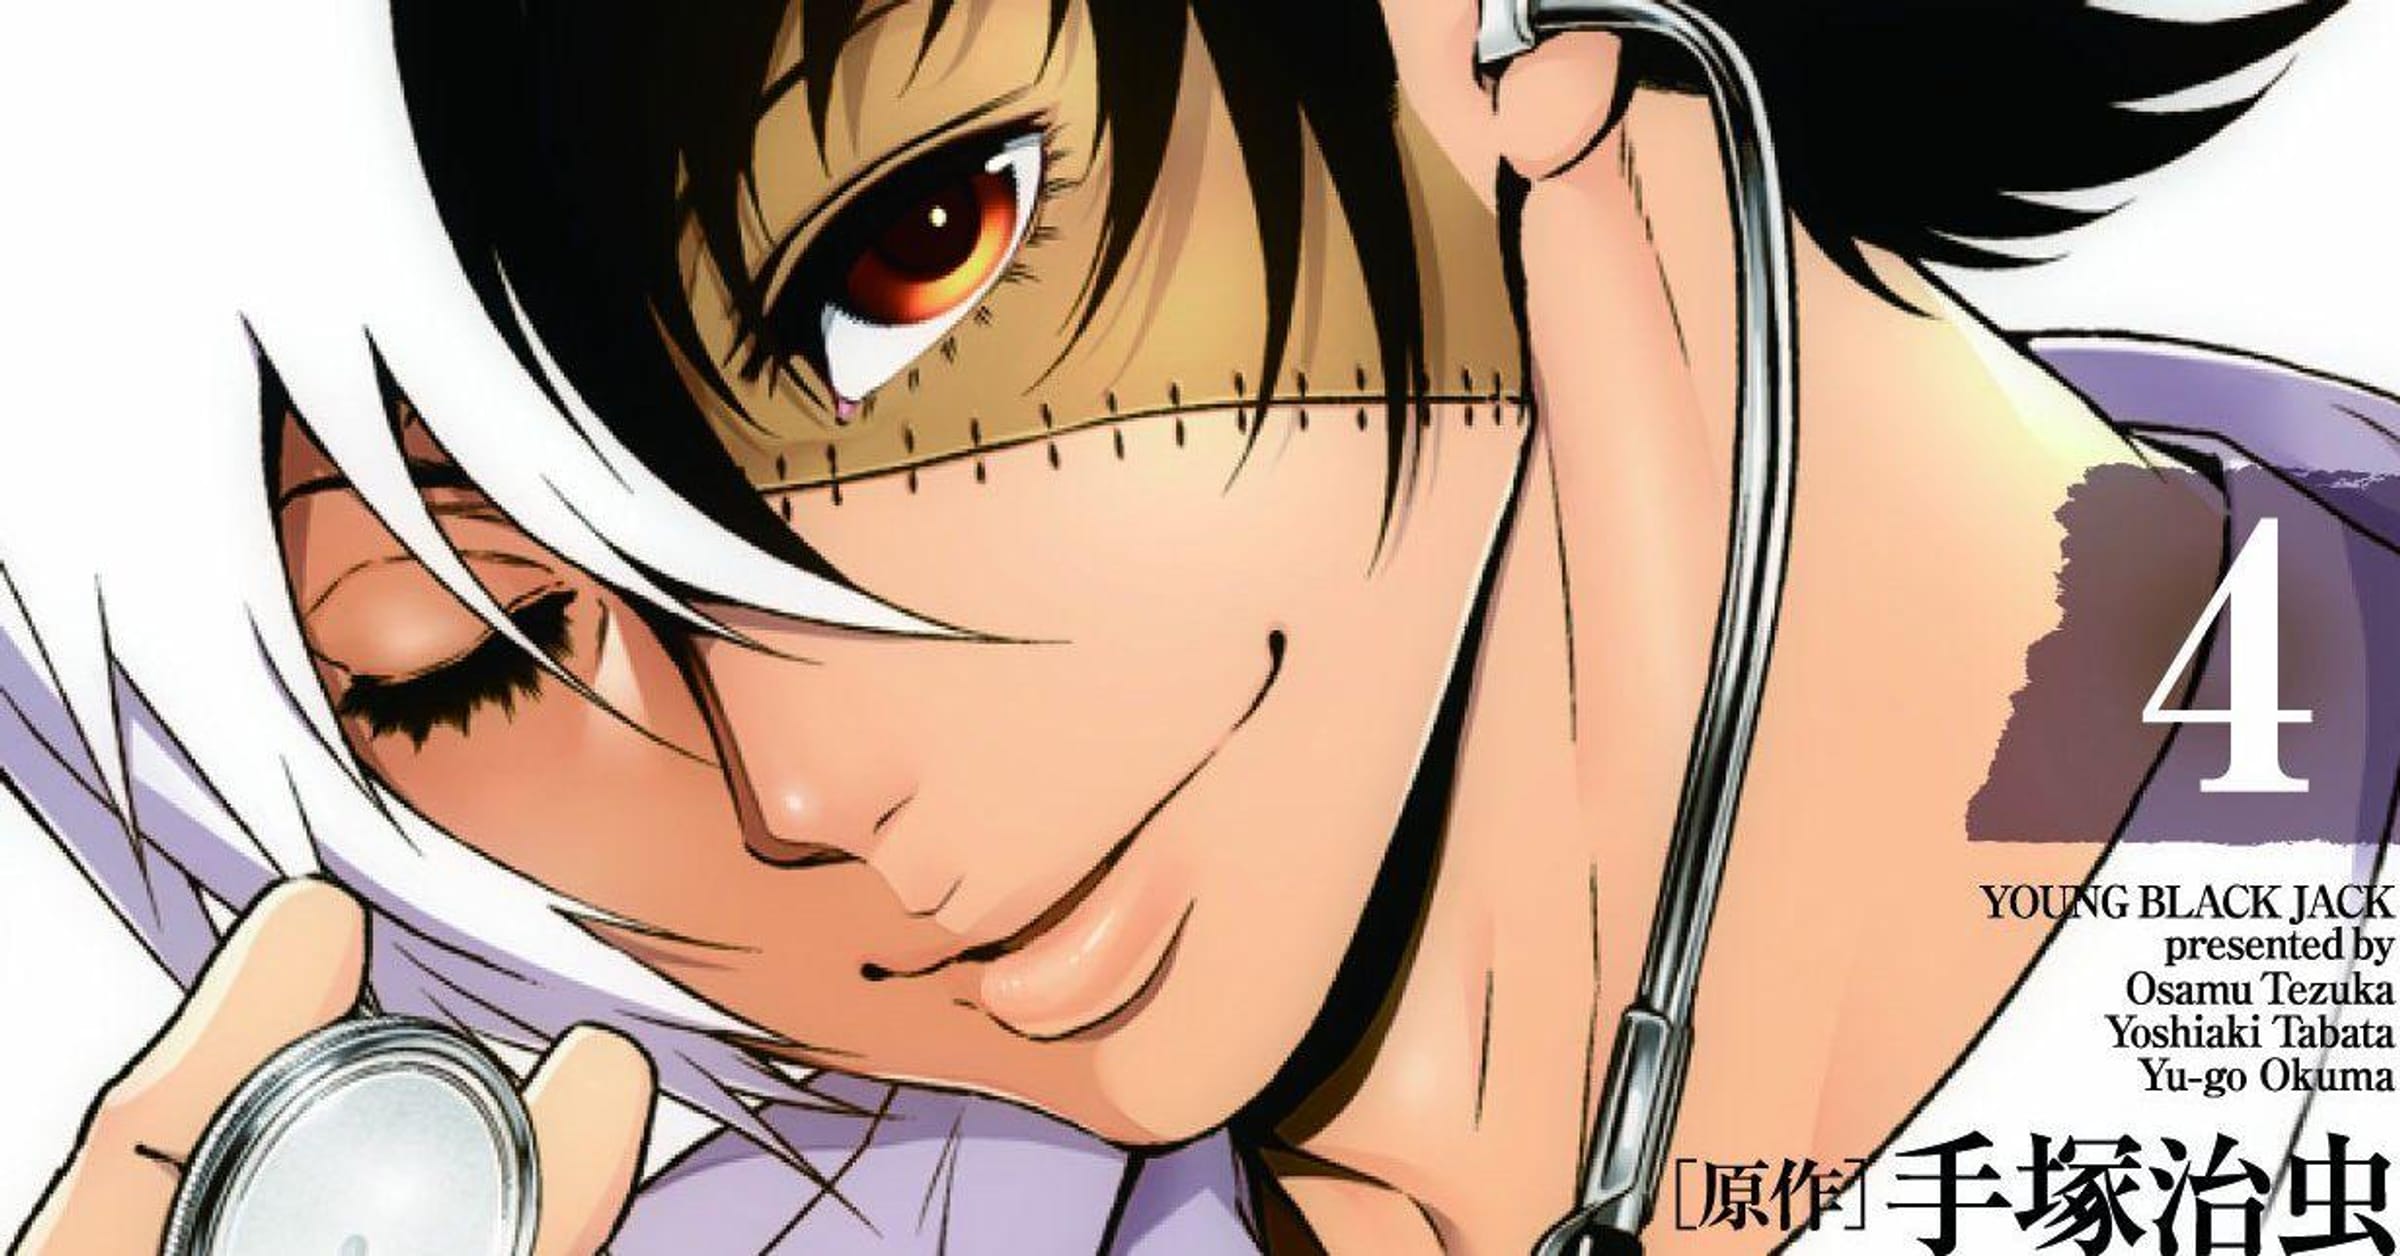 Fantasy Medical Novel 'Isekai Yakkyoku' Gets TV Anime